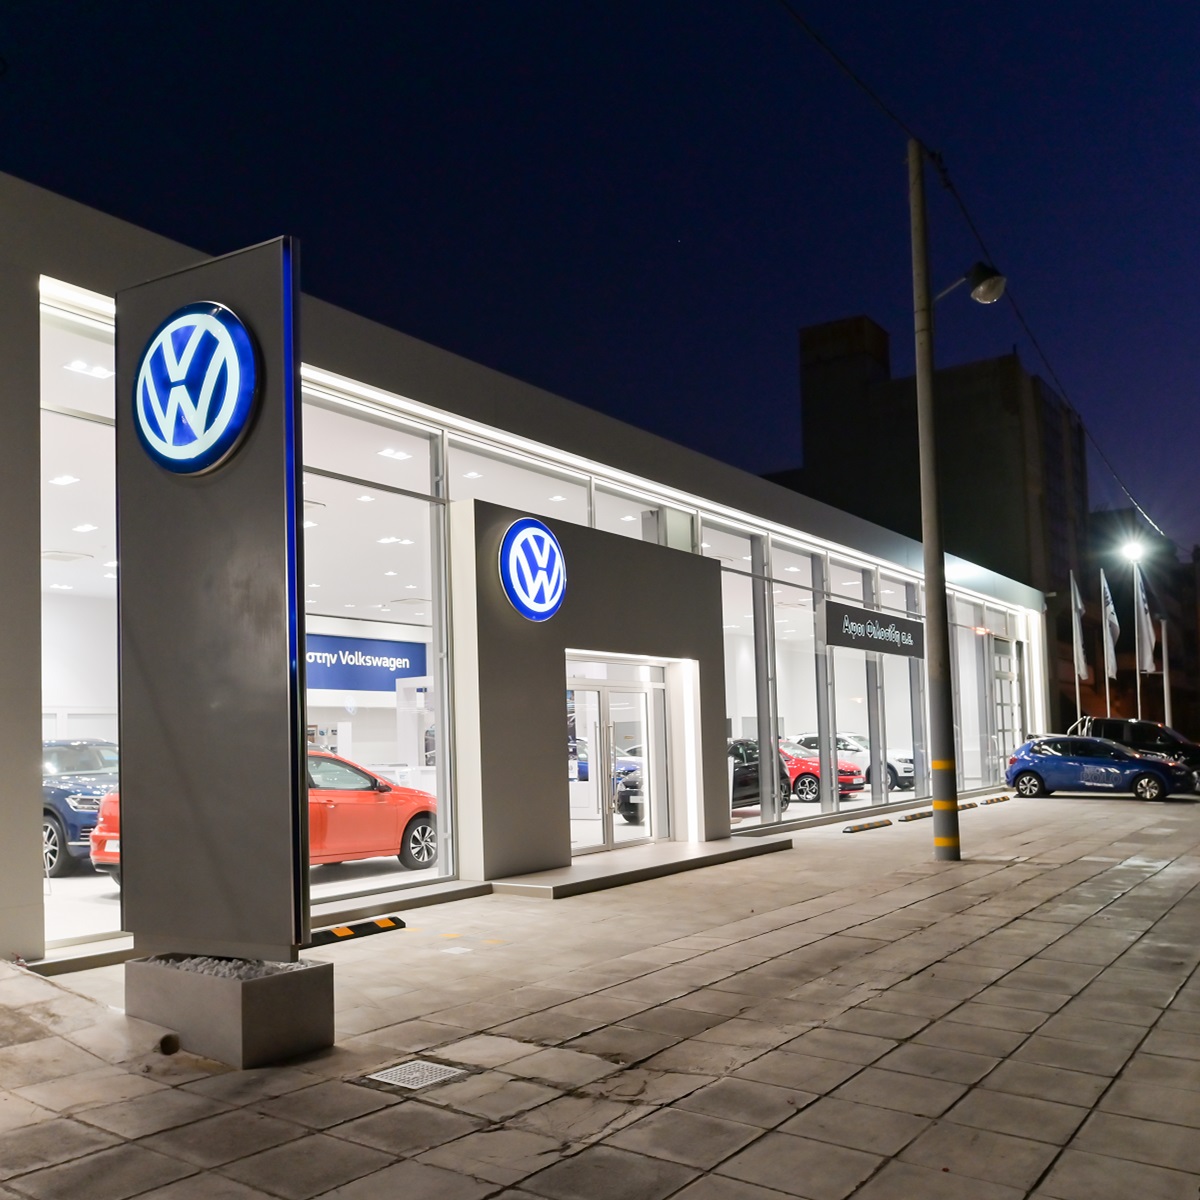 Νέα Έκθεση Volkswagen Αφοι Φιλοσίδη Ολύμπου 66 στο Βύρωνα!